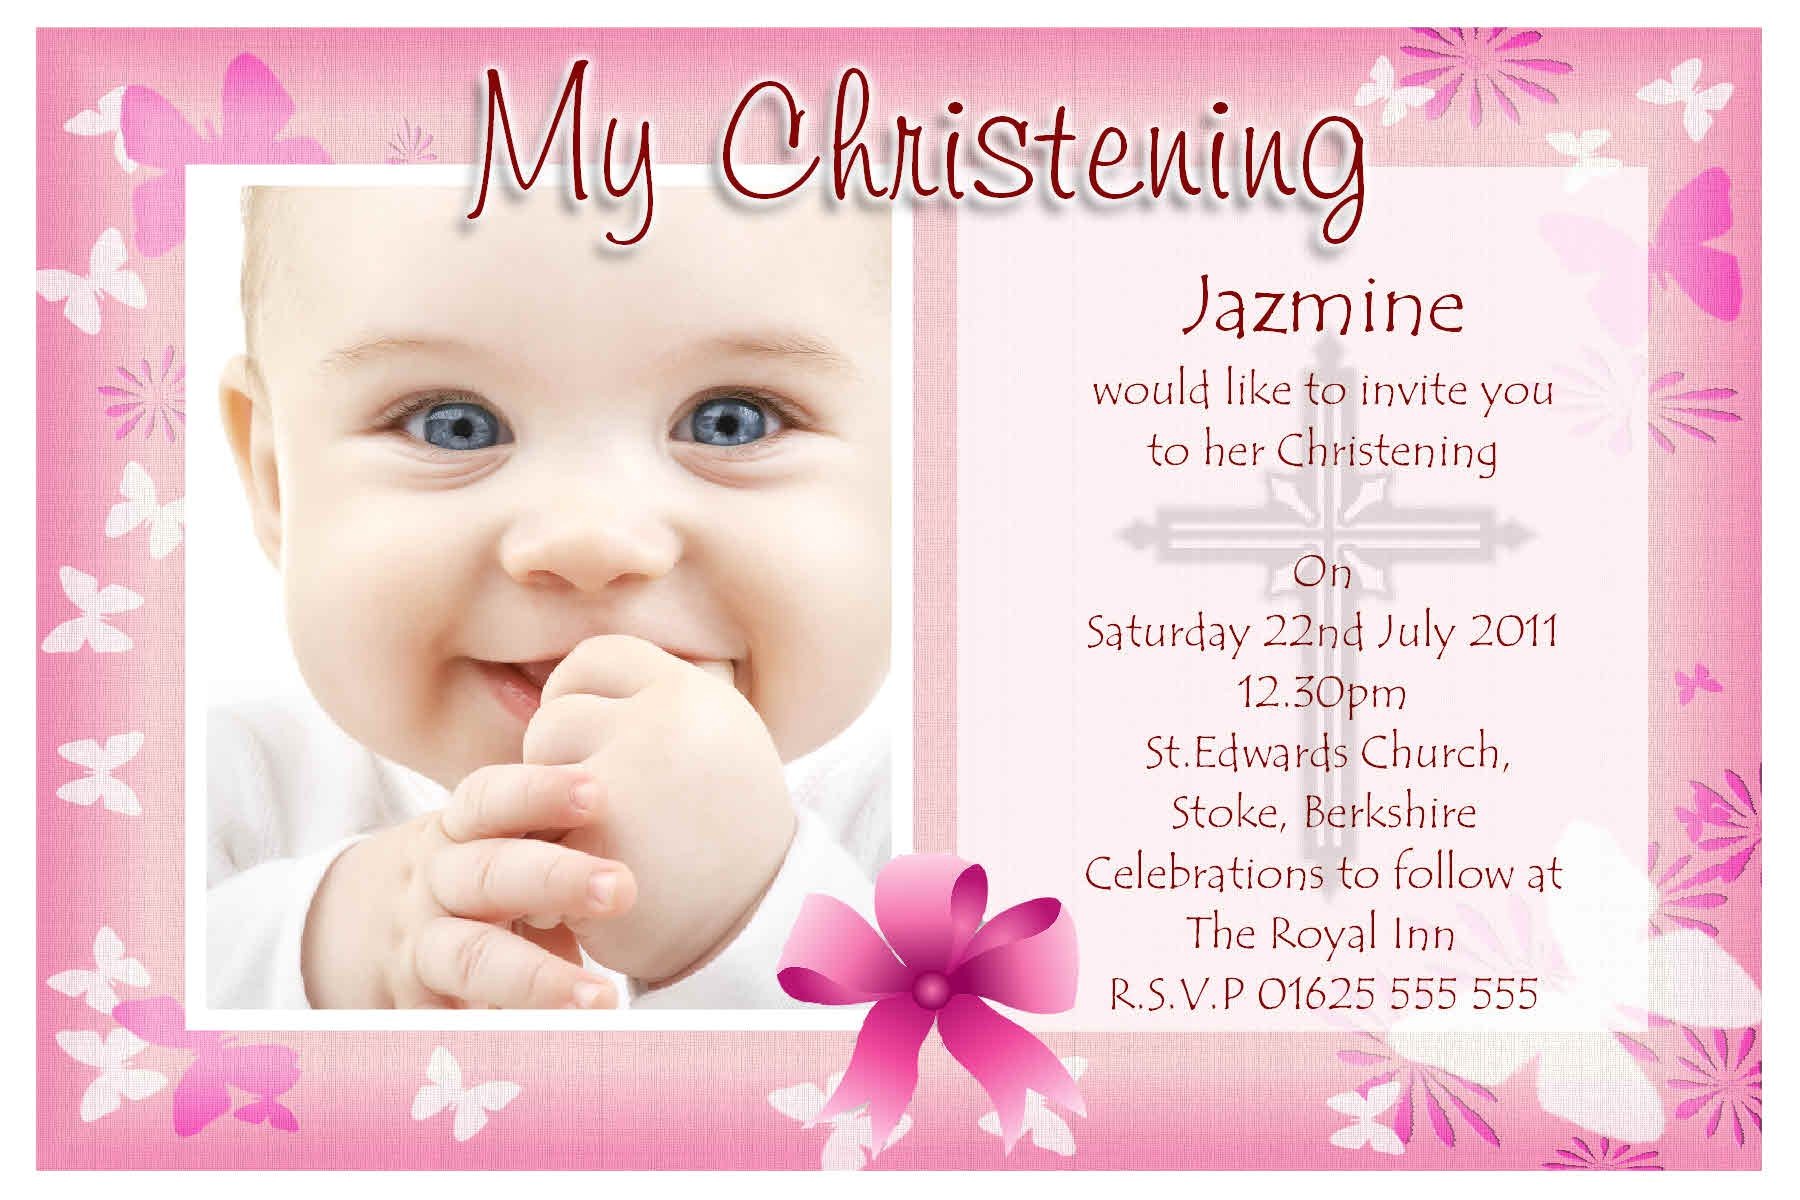 Invitation Card Design for Baptism Christening Invitation Cards Christening Invitation